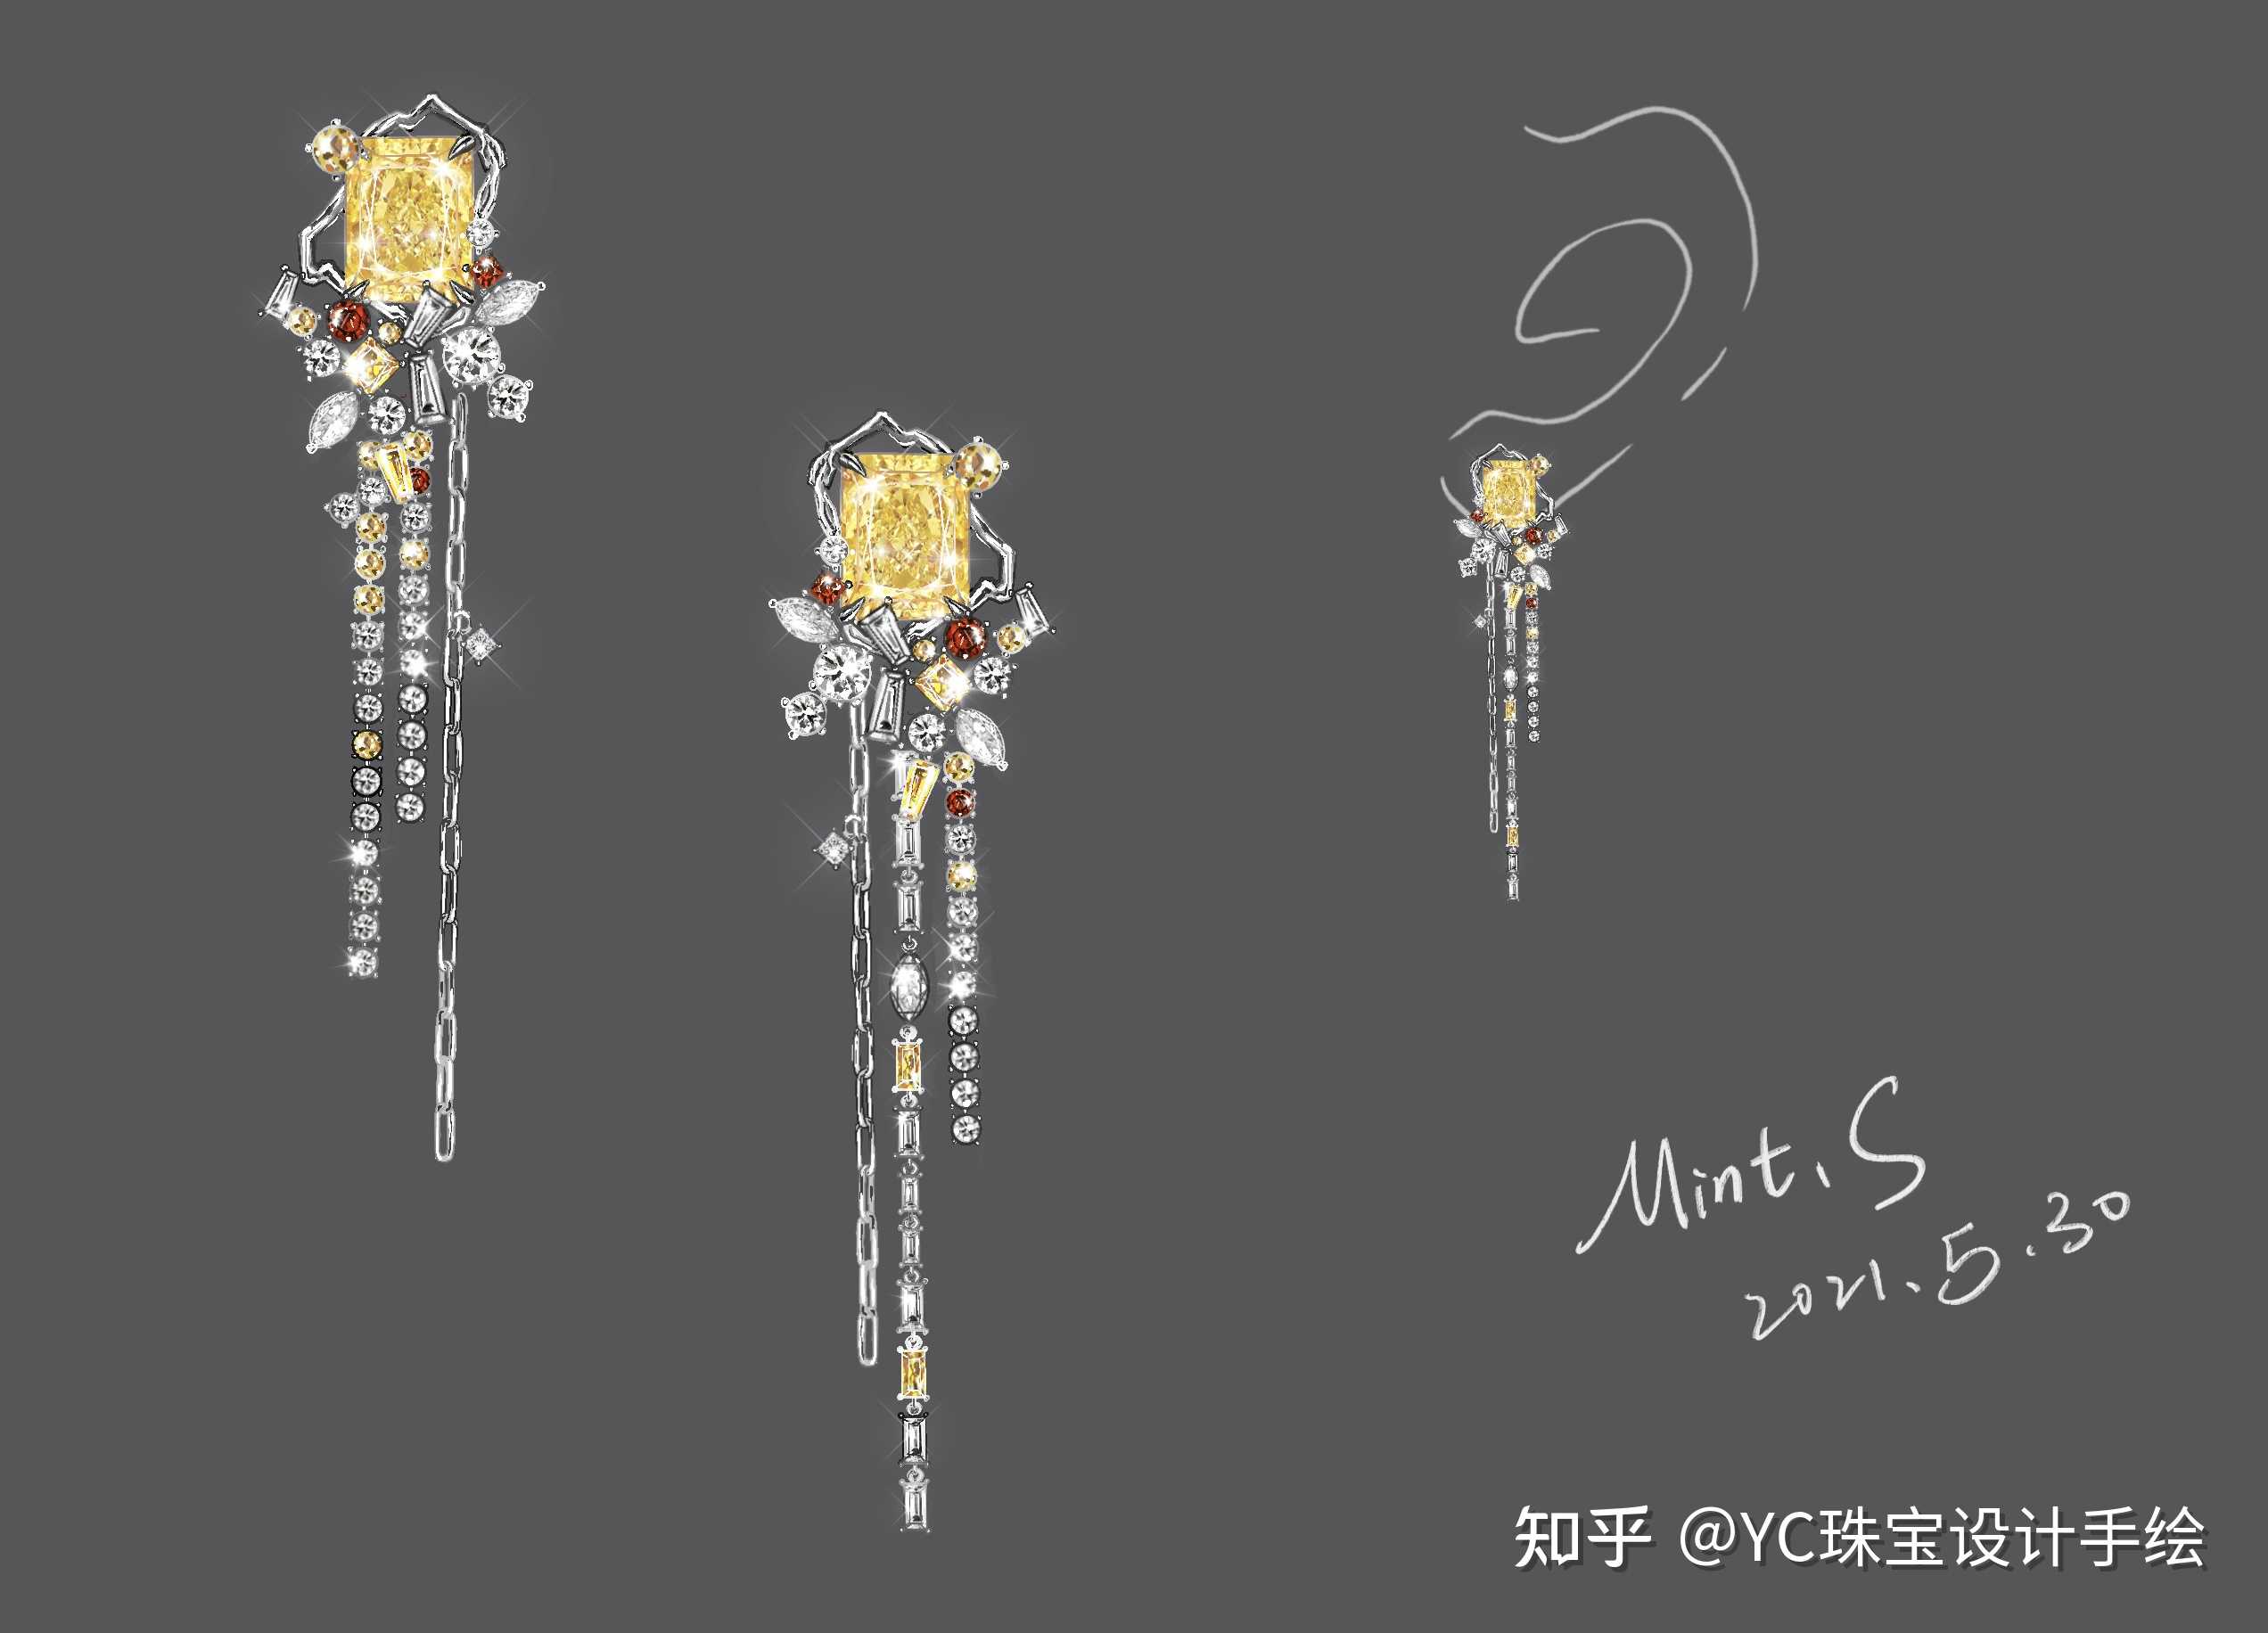 yc珠宝设计手绘 的想法: mint.s耳坠设计 #珠宝设计# - 知乎